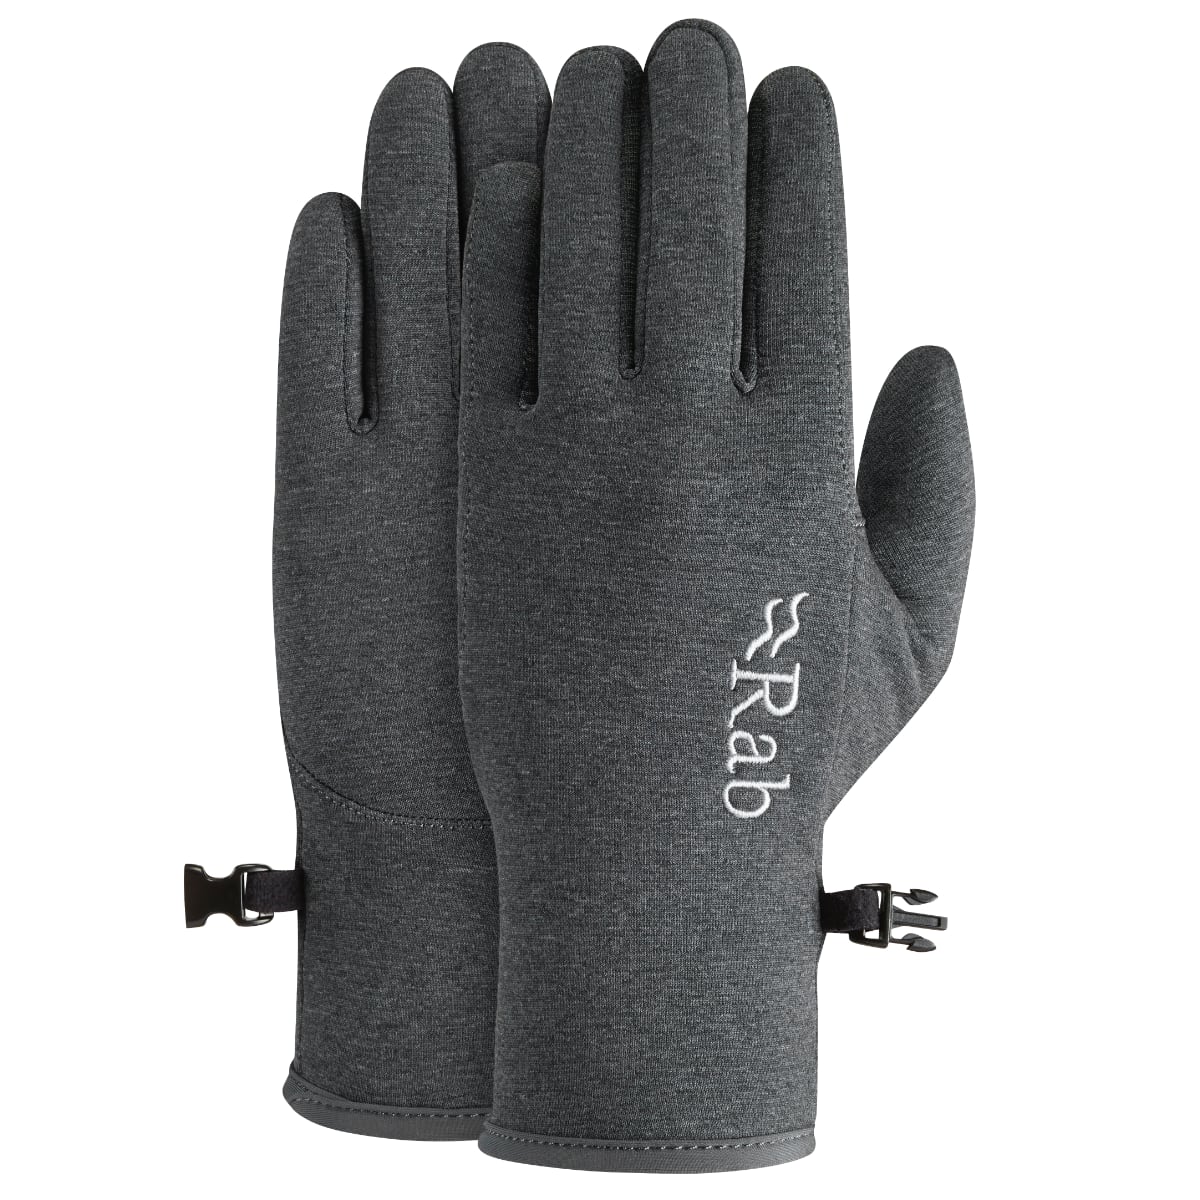 Barbour Fingerless Gloves - Navy, Large